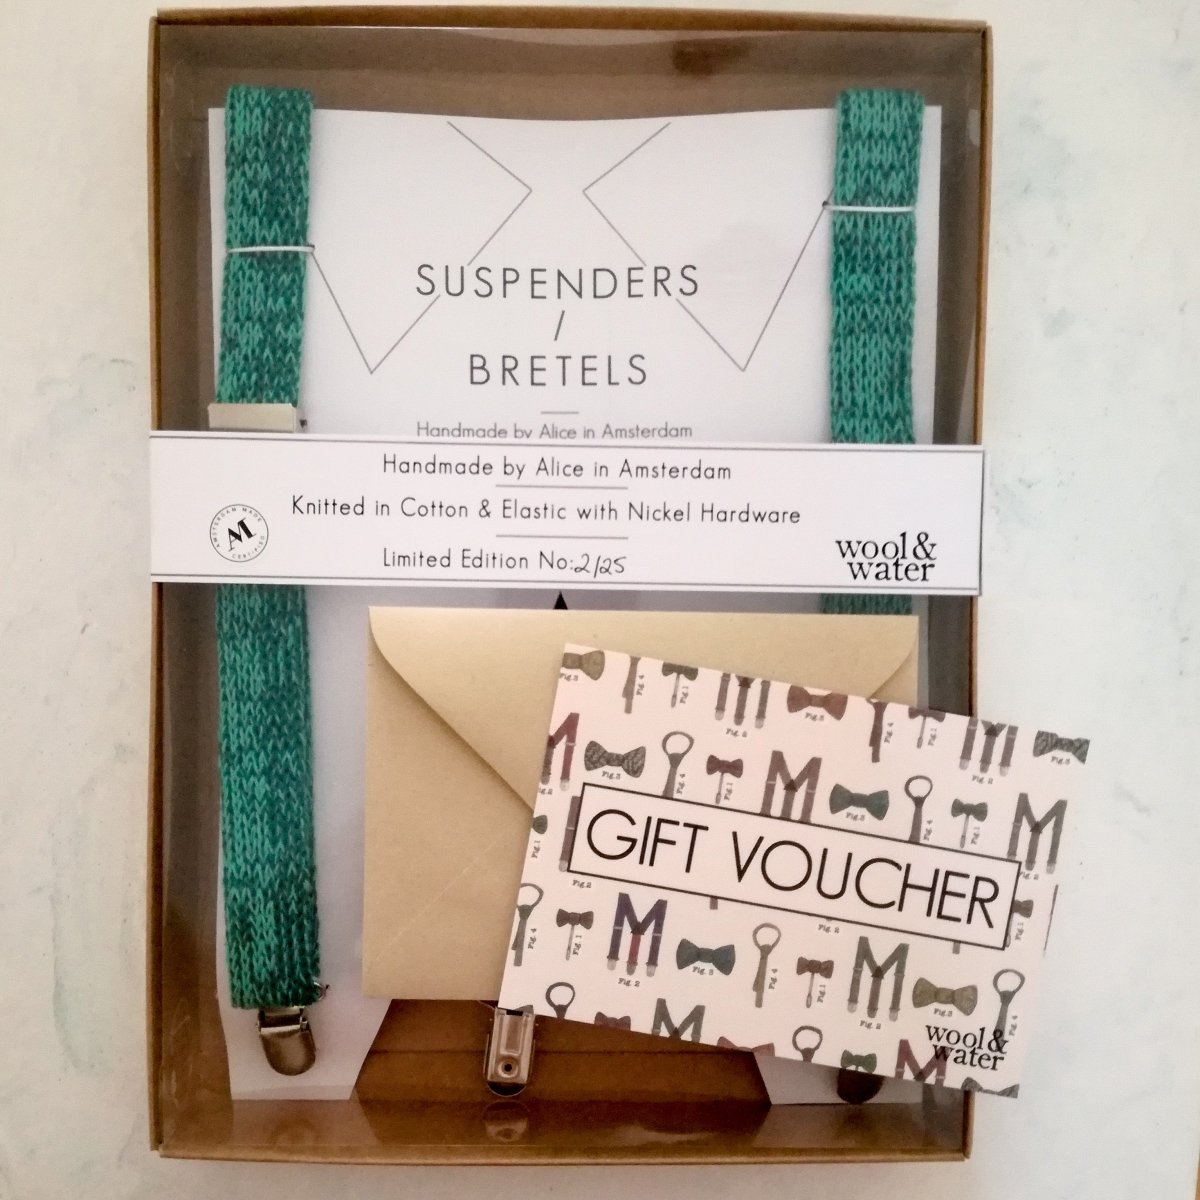 Suspenders / Bretels Gift Voucher - Wool & Water